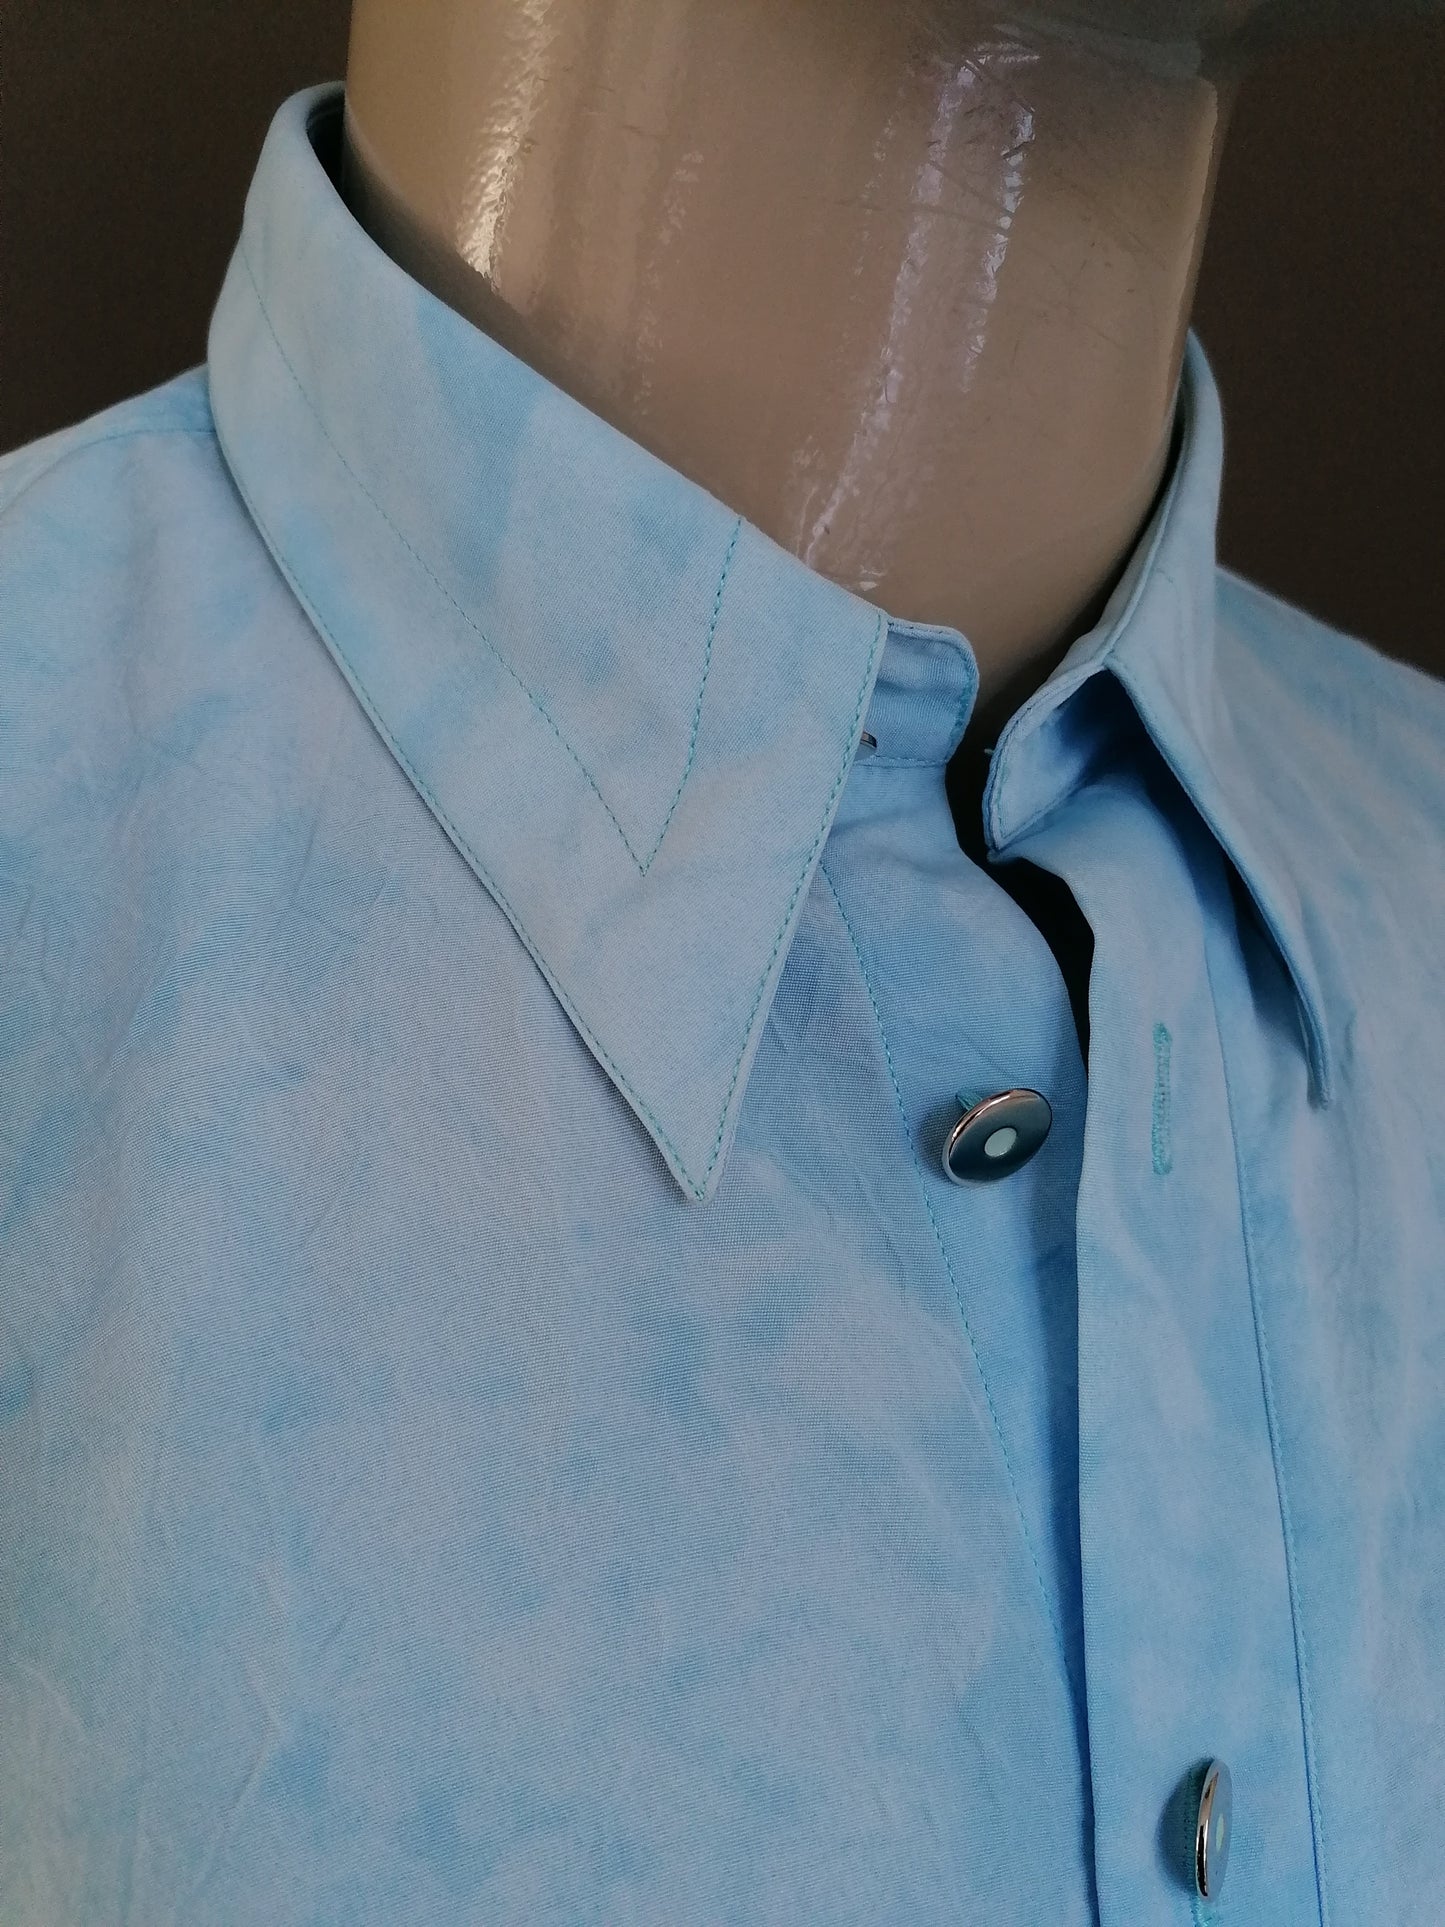 Camisa de manga corta luncina vintage. Azul claro coloreado con efecto arrugas. Tamaño XL